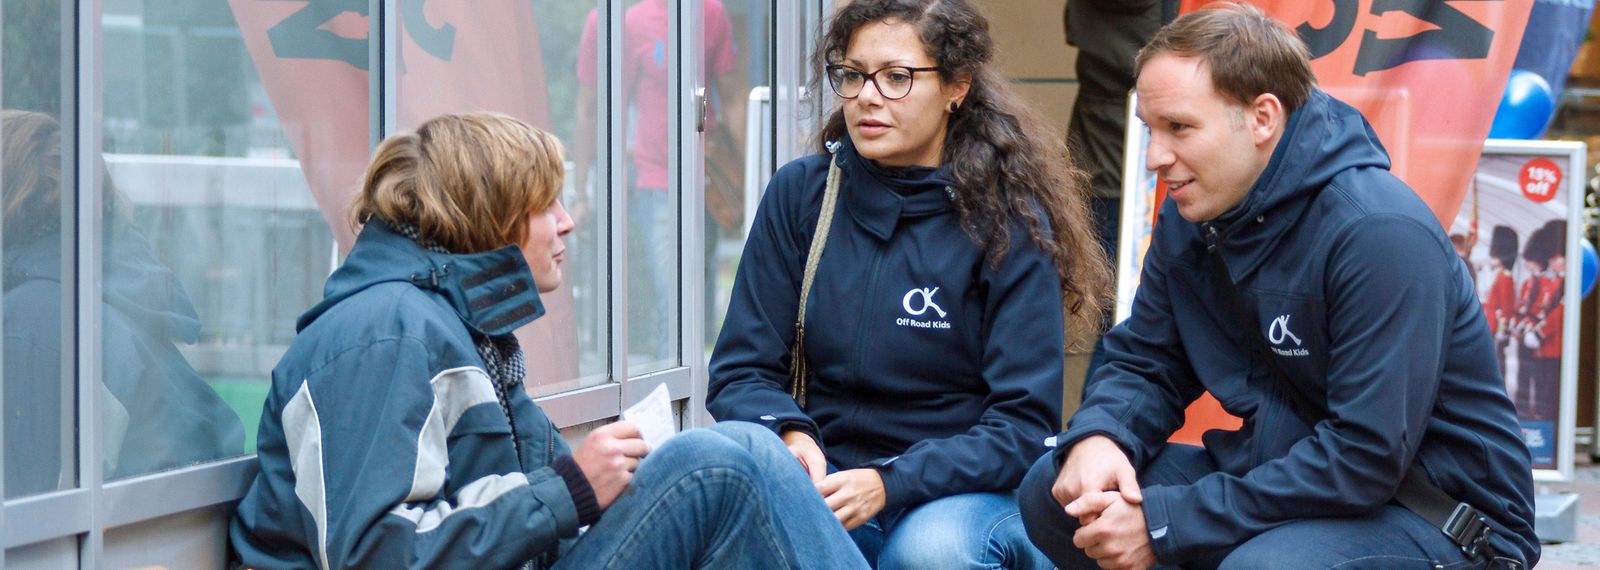 Eine junge Frau und ein junger Mann sprechen mit einer obdachlosen, jungen Person auf der Straße